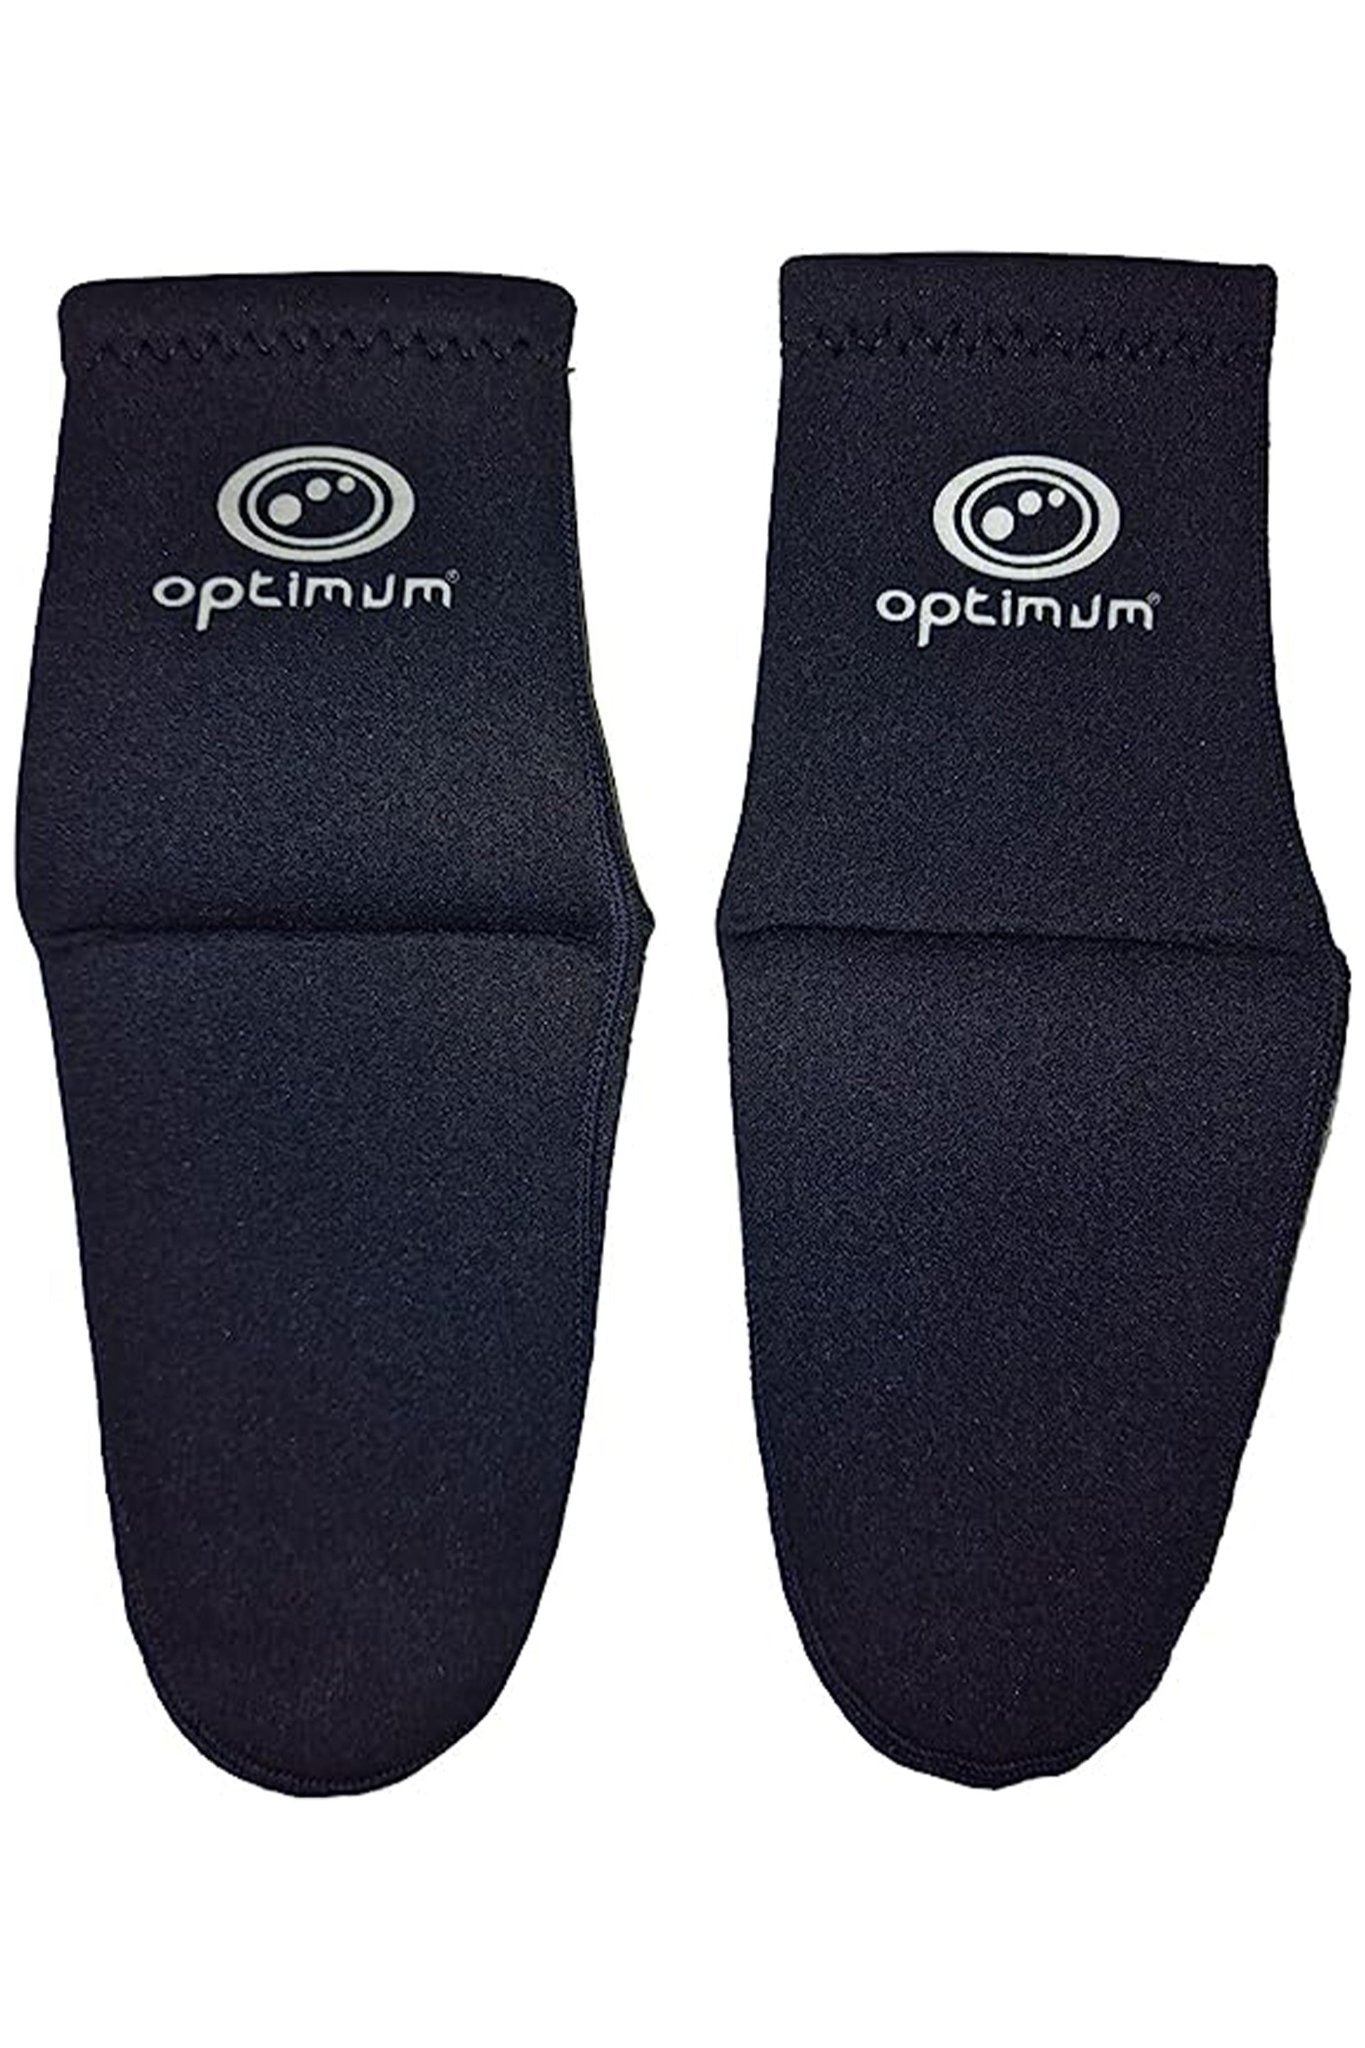 http://www.optimumsport.com/cdn/shop/products/optimum-wetsuit-neoprene-socks-3mm-surfing-diving-kayaking-water-sport-anti-slip-diving-socks-for-men-and-women-885762.jpg?v=1710765903